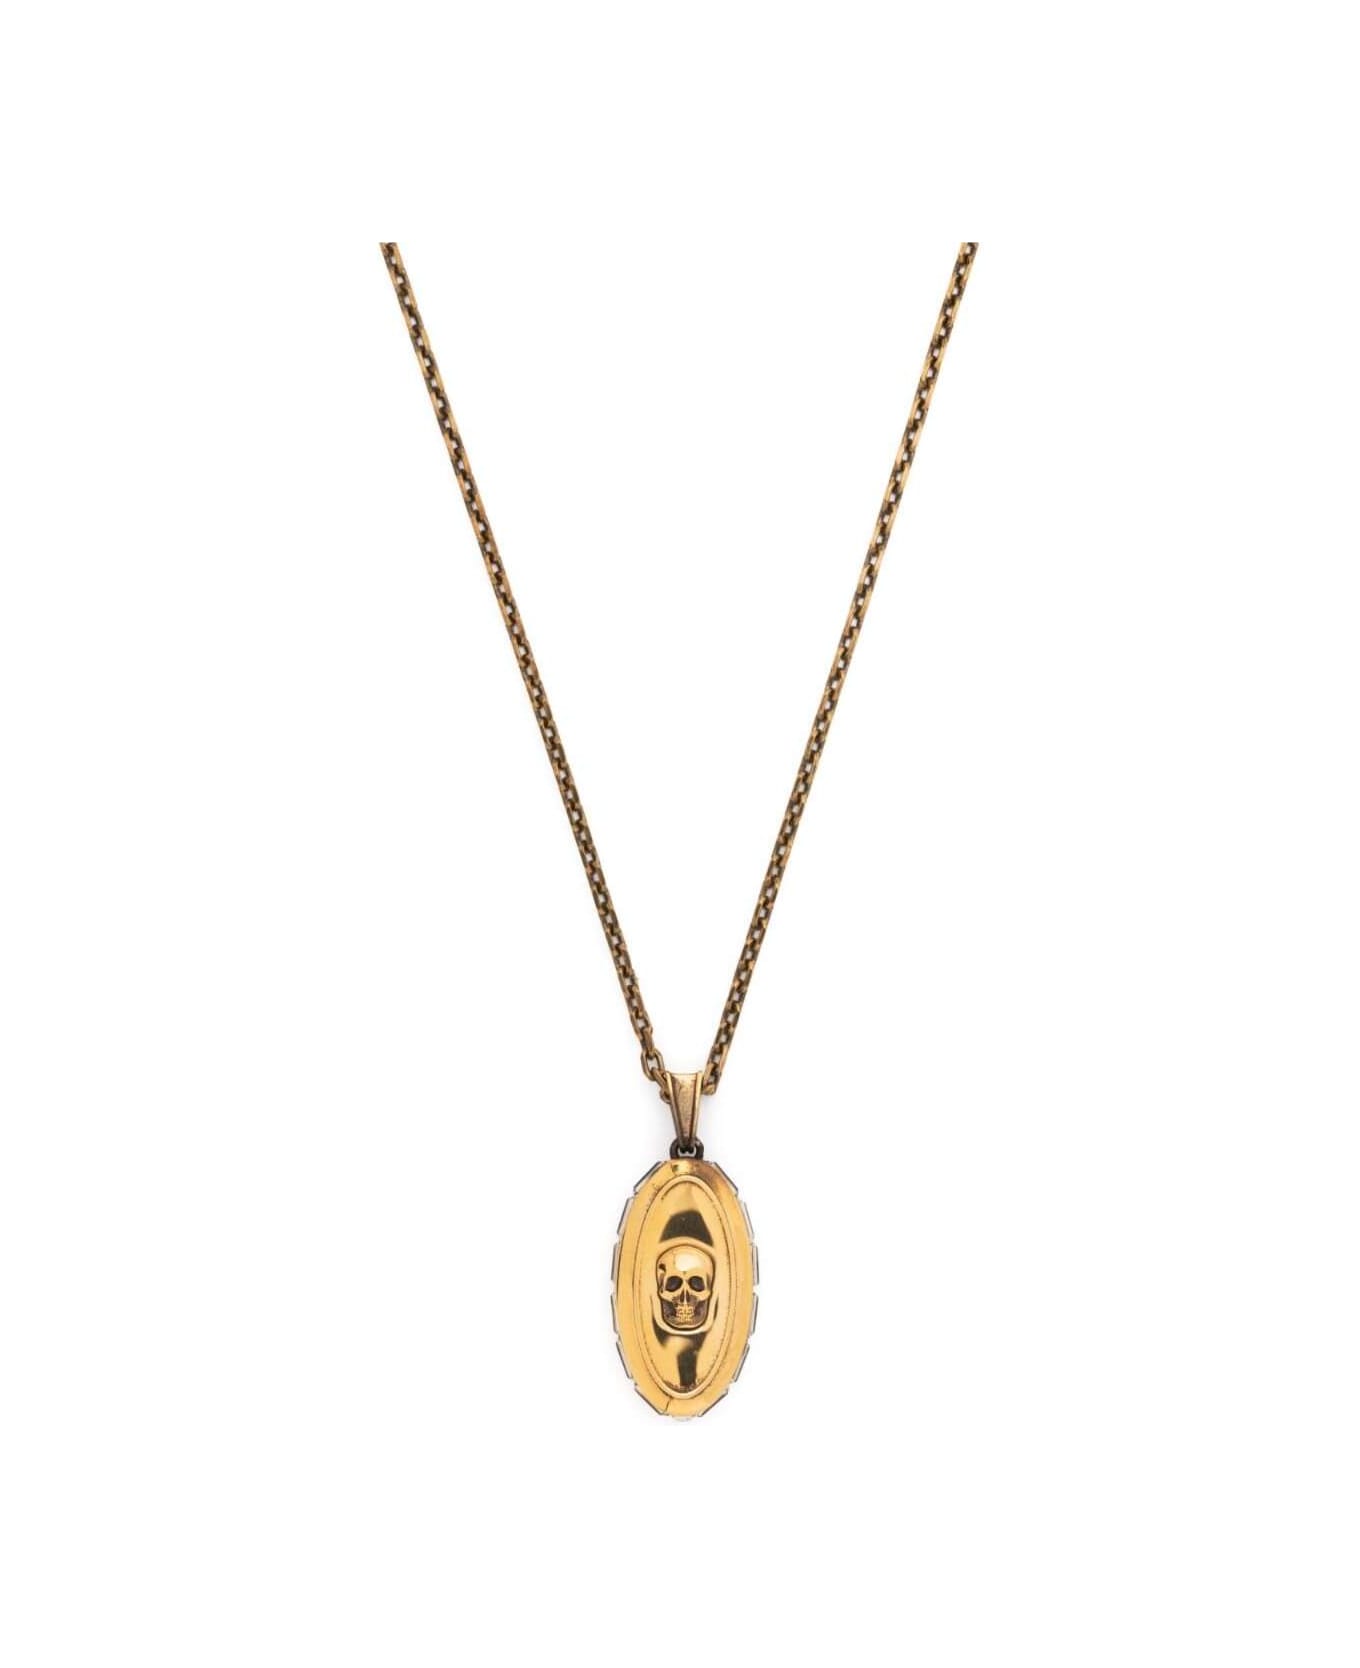 Alexander McQueen Brass Necklace With Motif Of Skull - Metallic ネックレス